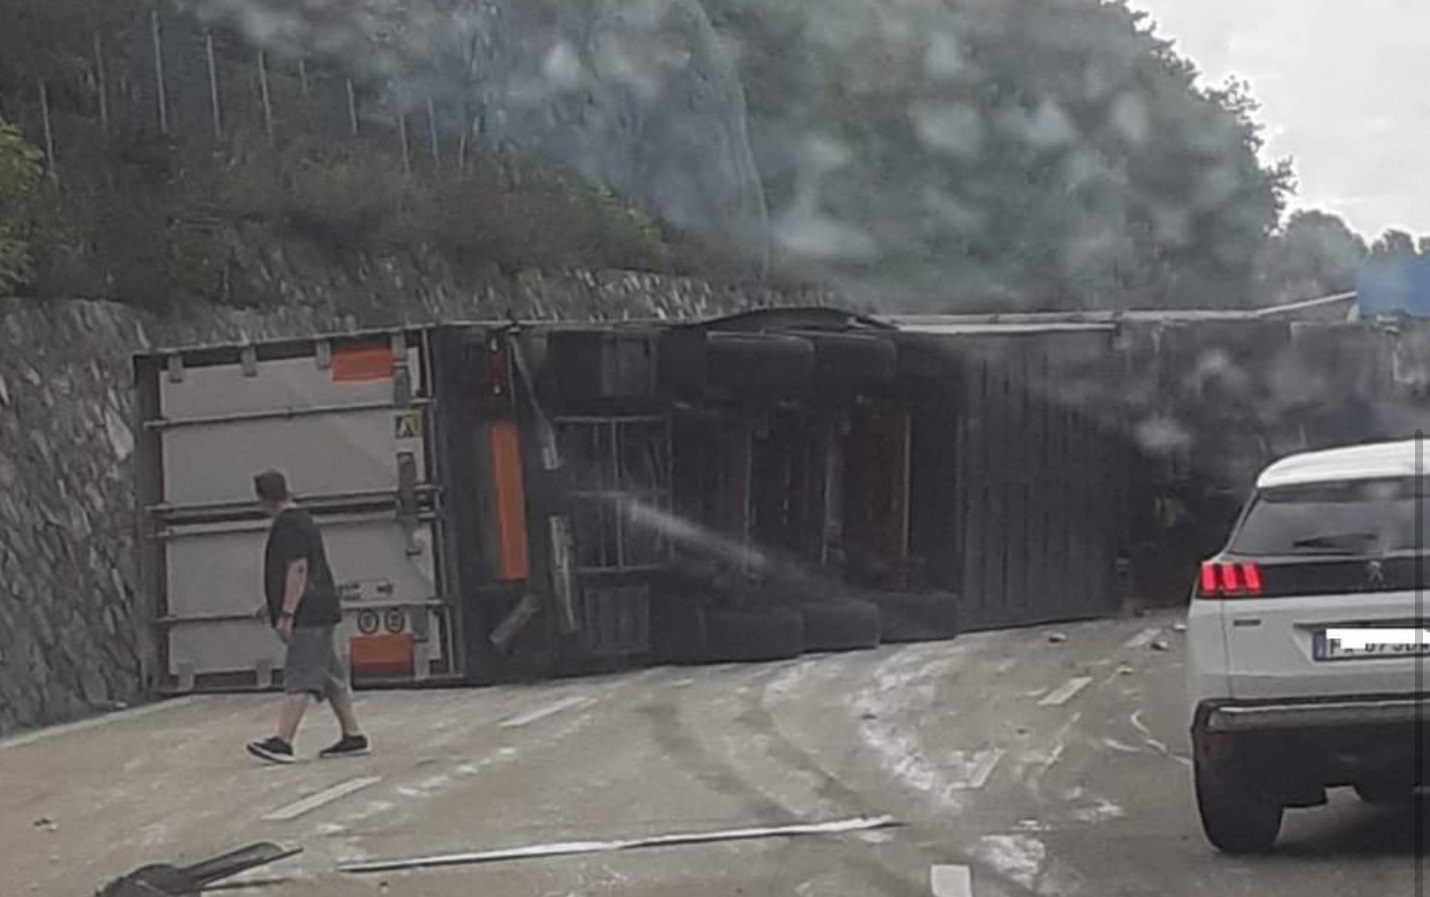 Tir si ribalta in autostrada: traffico bloccato sull'A10 tra Varazze e Arenzano